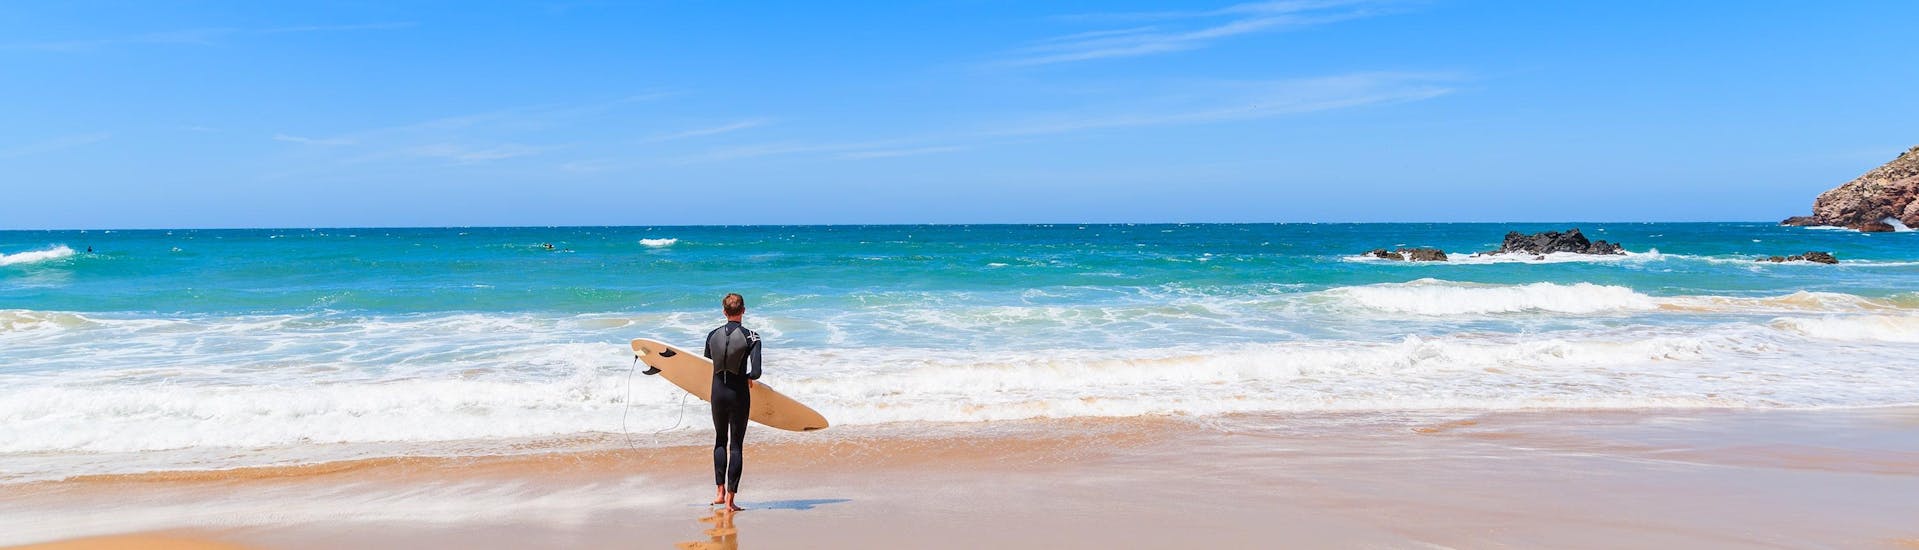 Una surfista sfida le onde facendo surf presso Albufeira.